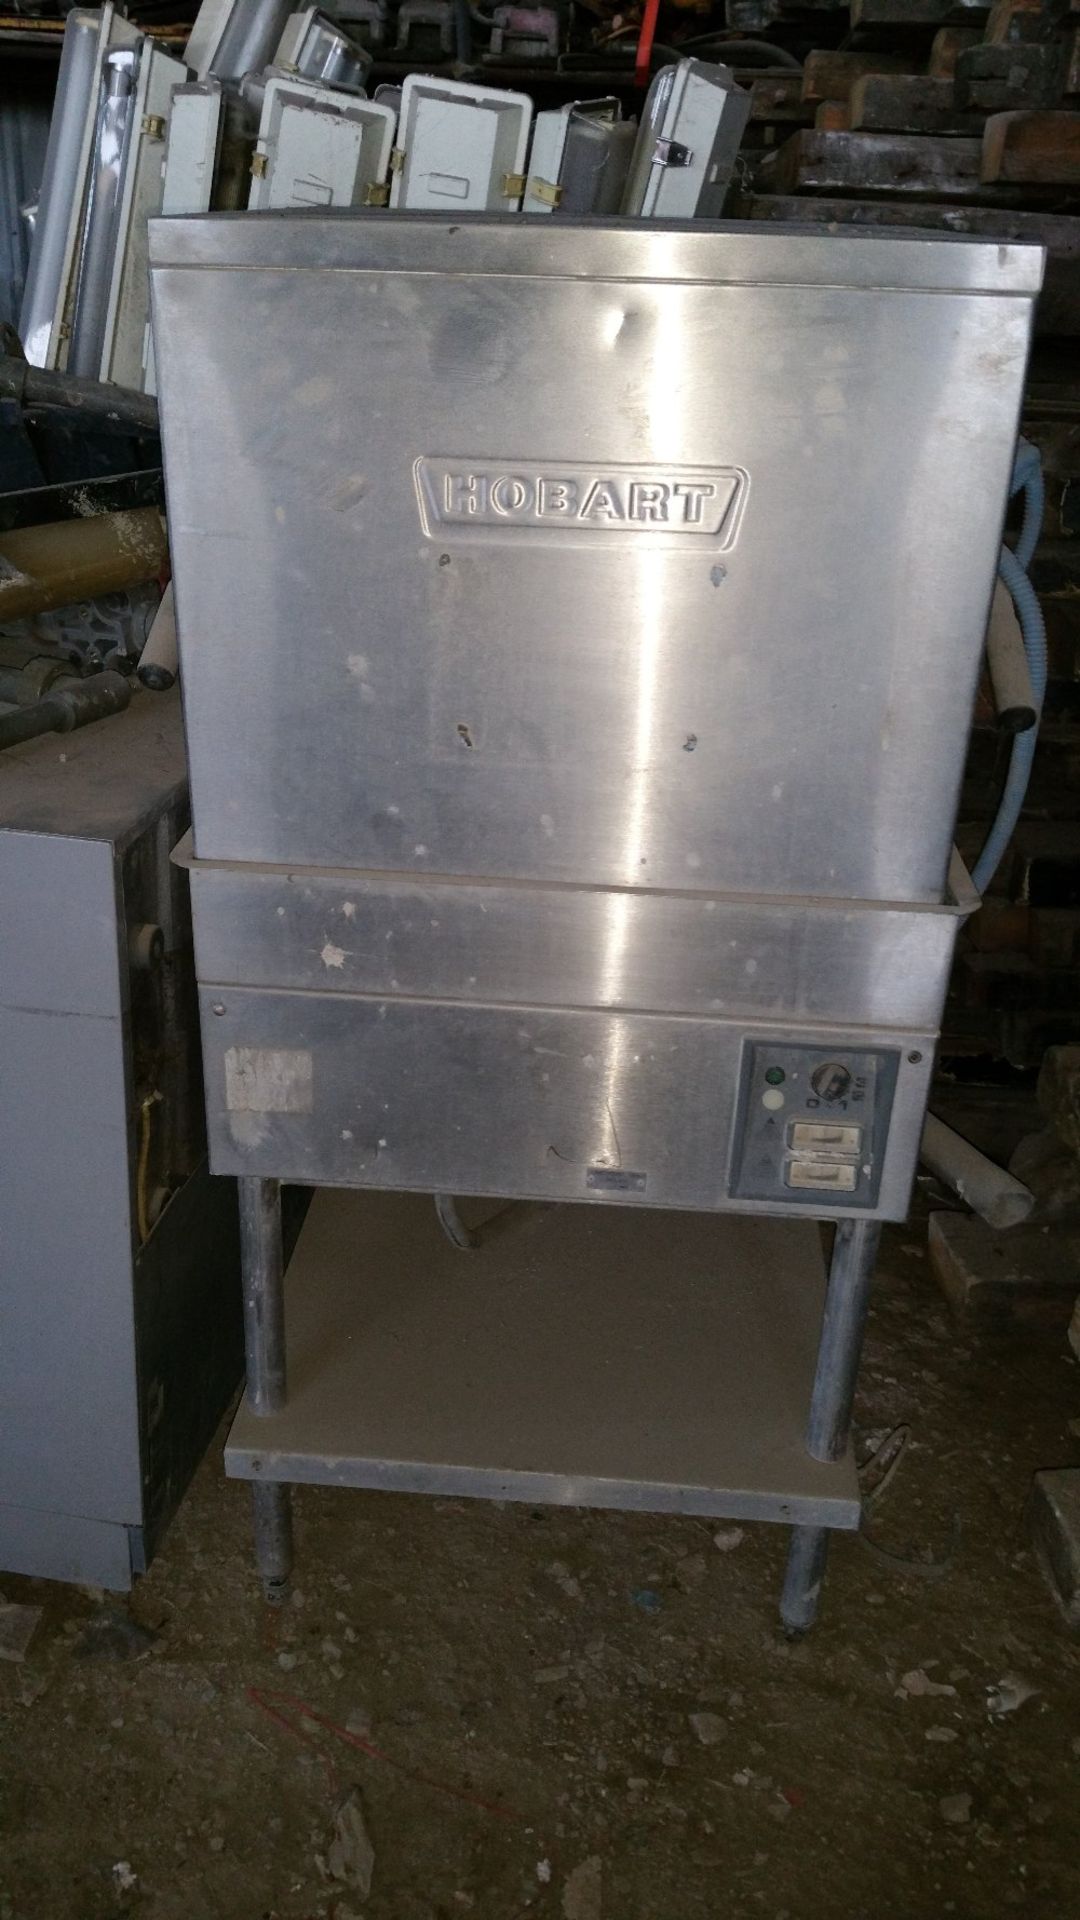 2no Hobart professional dishwashers - Image 3 of 3